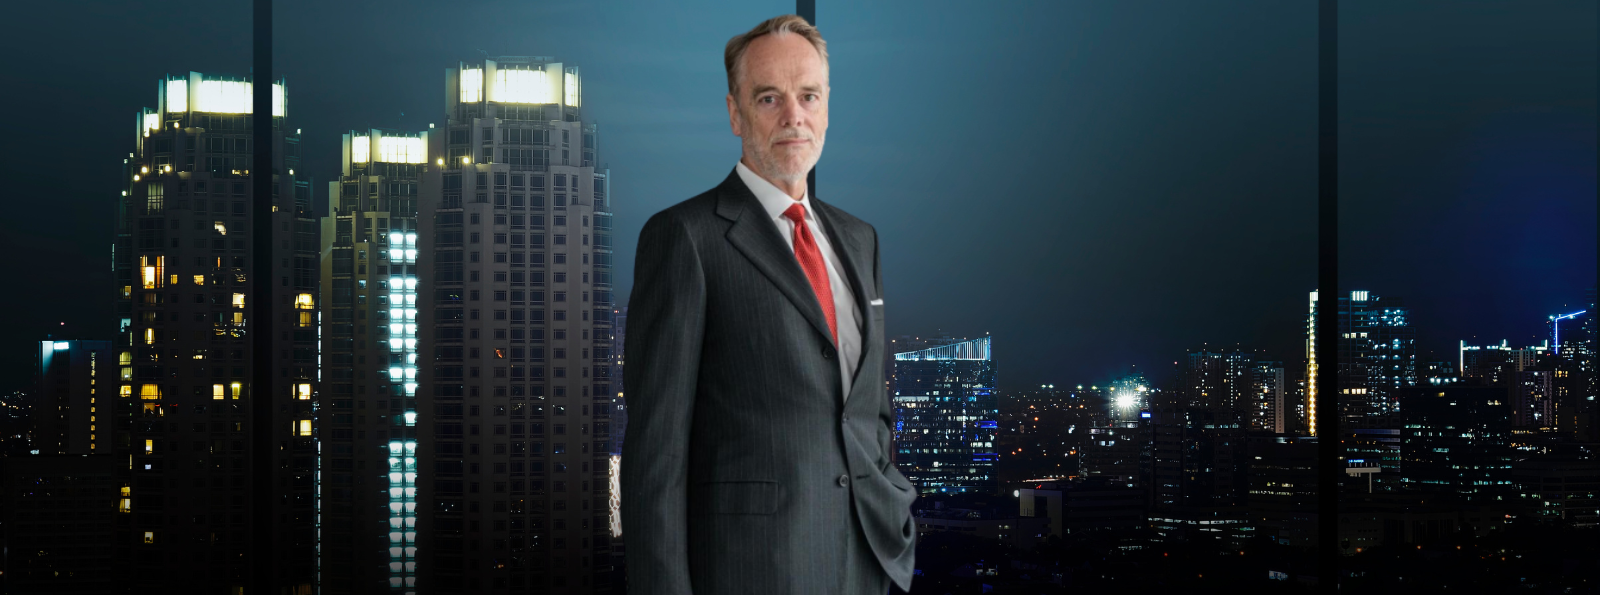 David Folkerts-Landau, Deutsche Bank